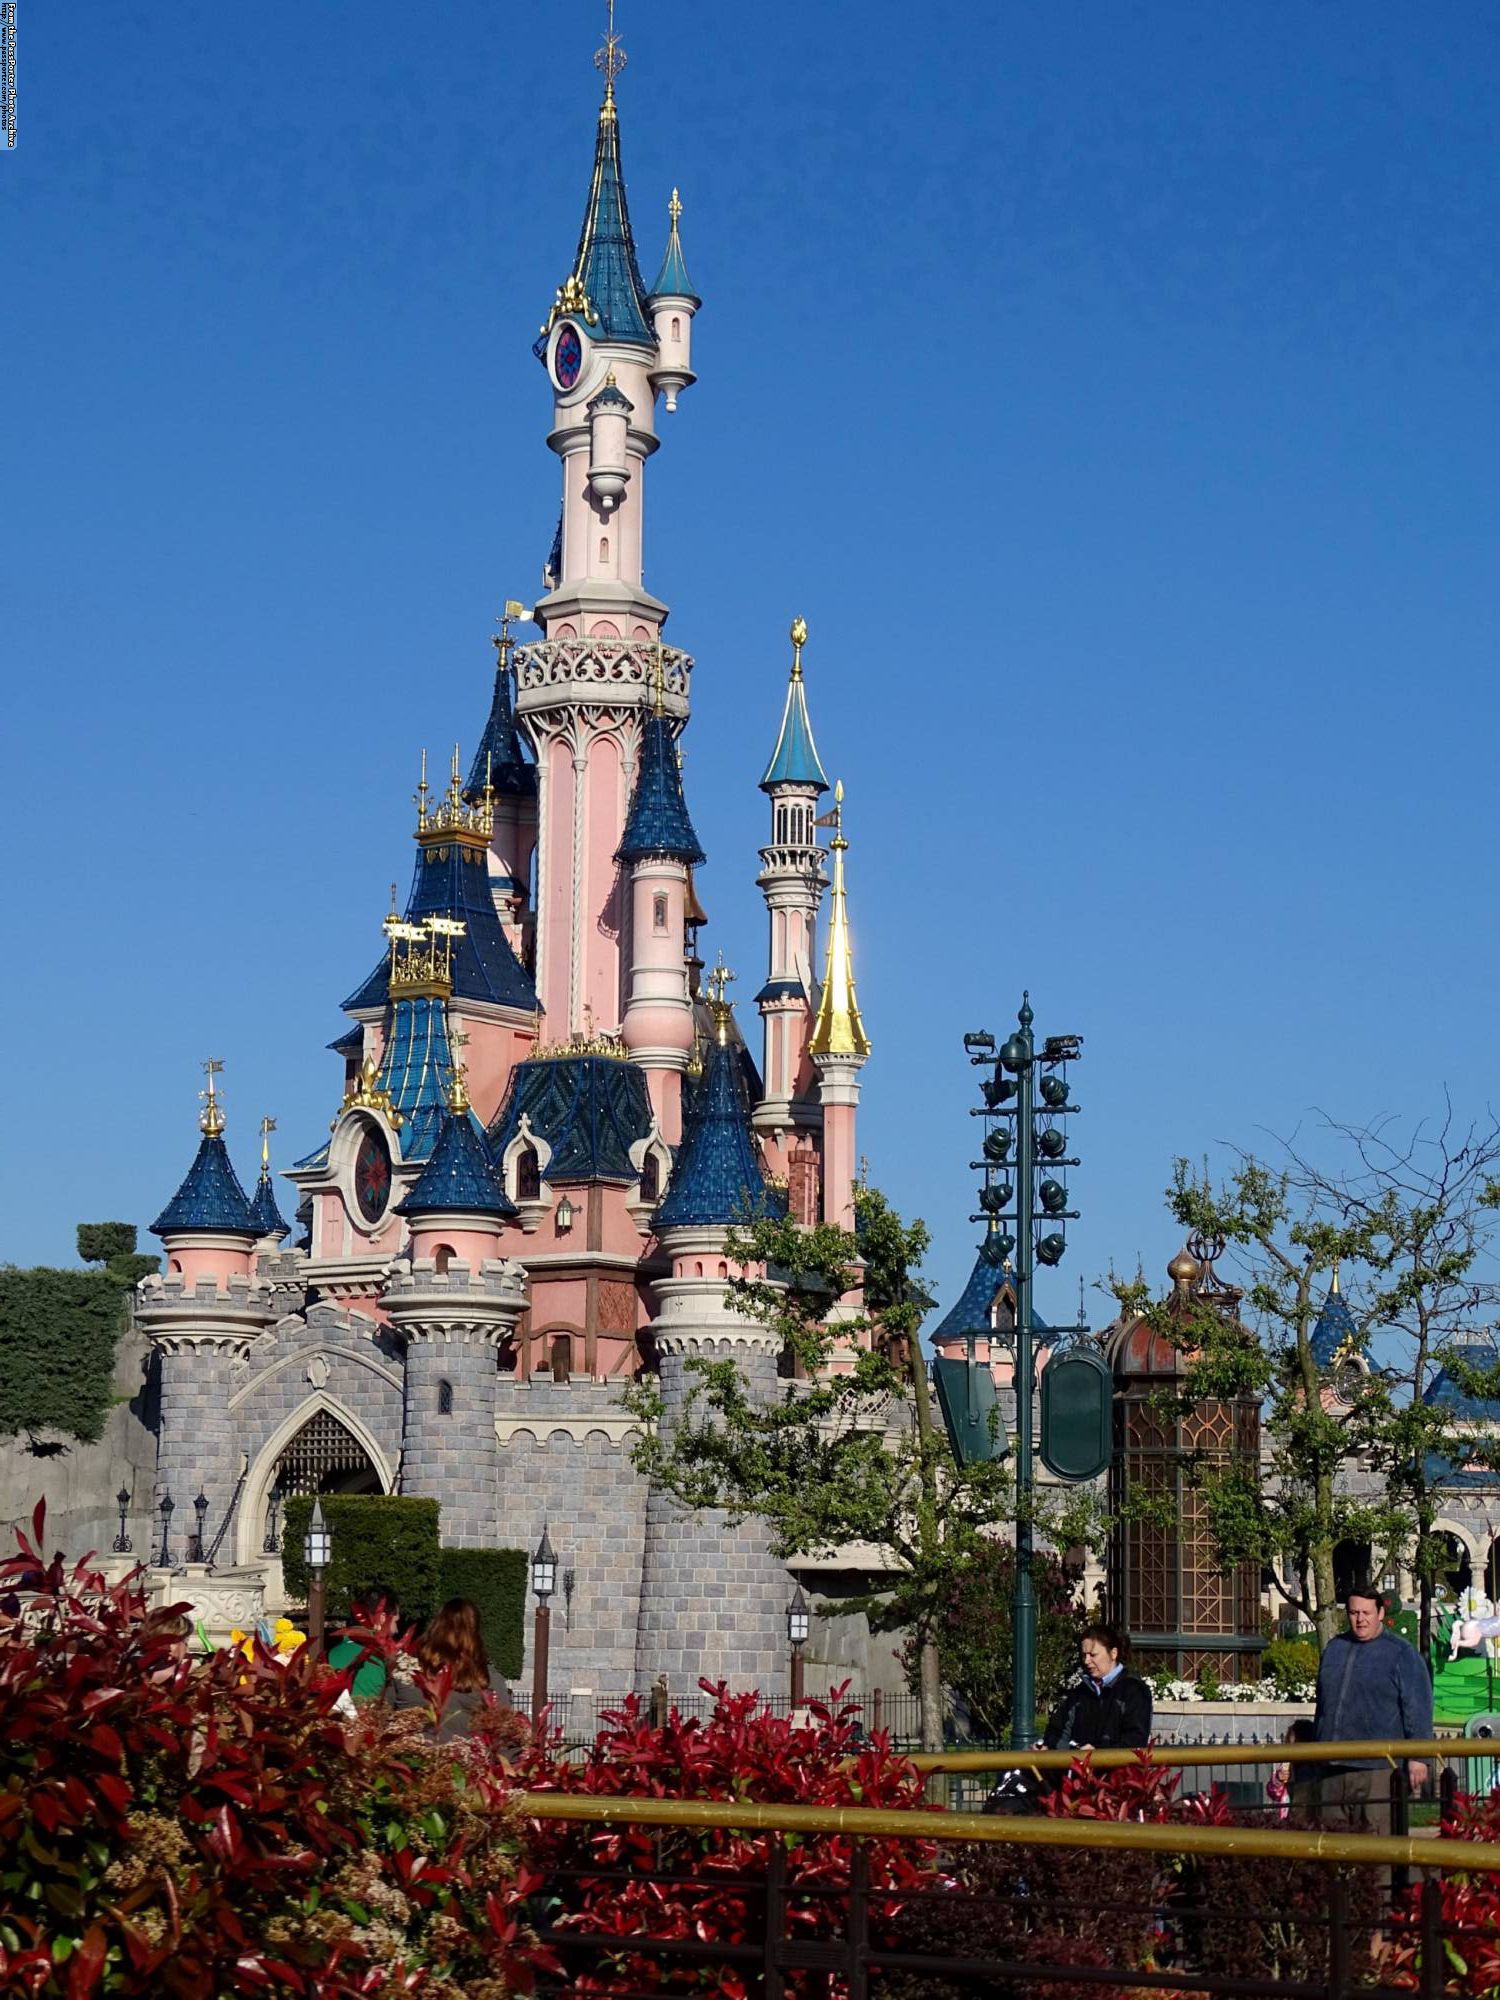 Disneyland Paris - castle